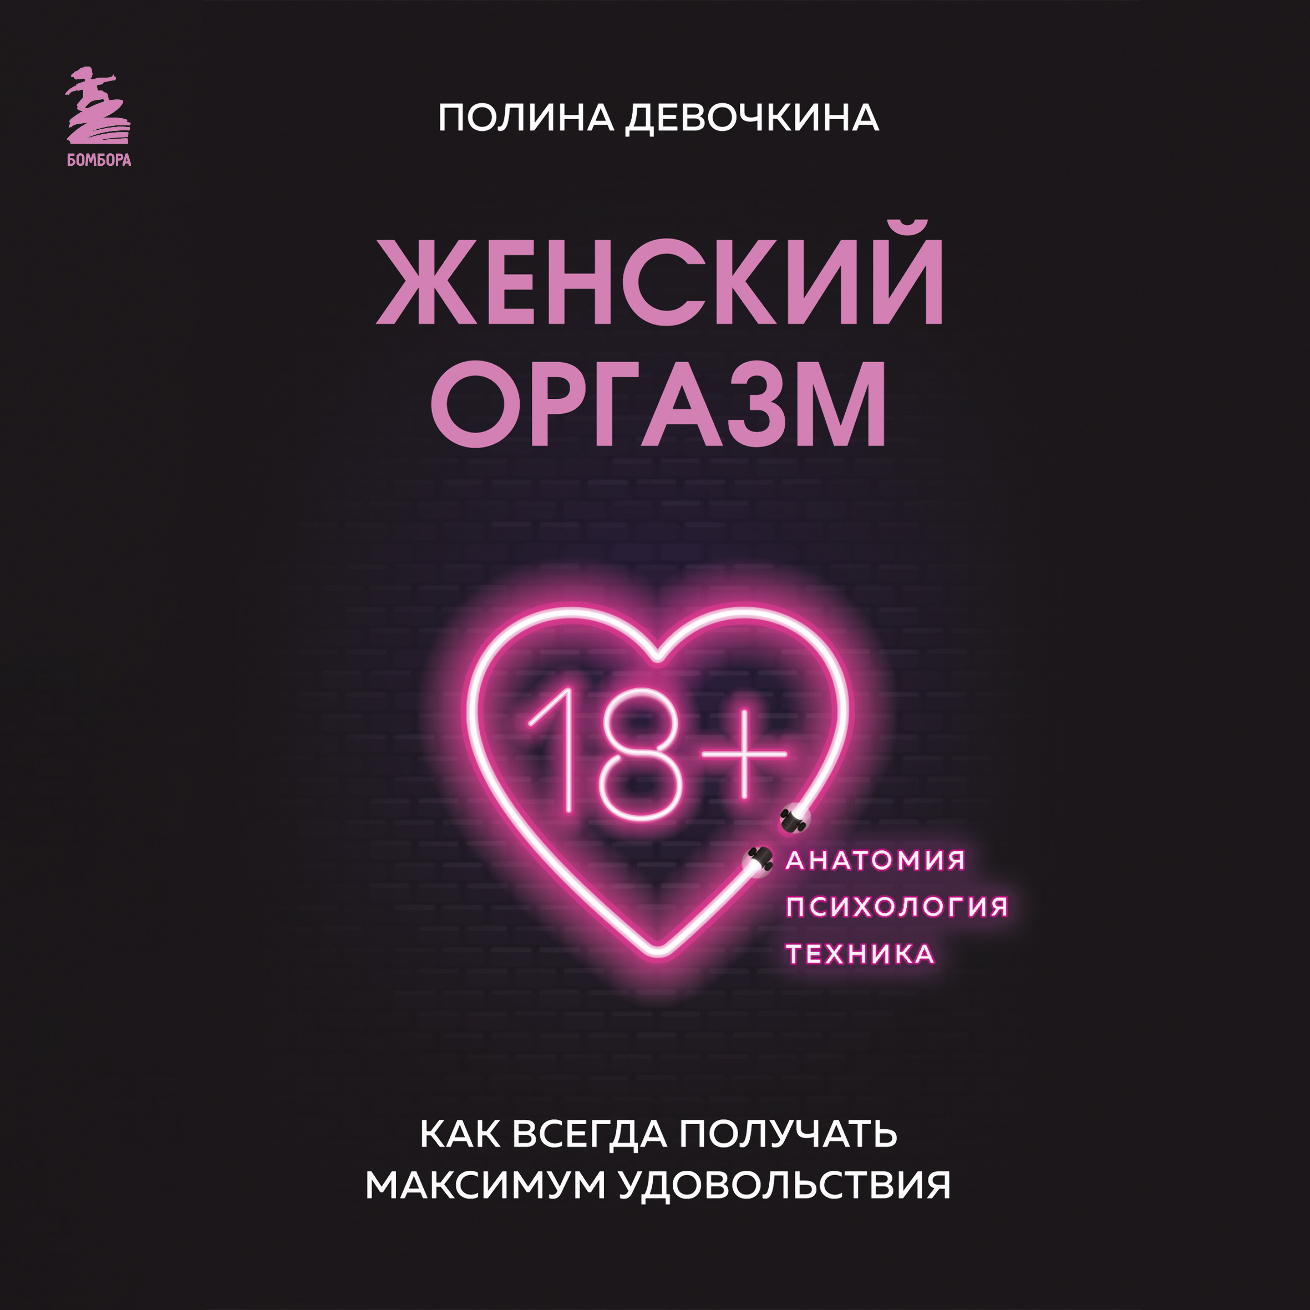 Девушка захотела получить оргазм. Большая коллекция порно видео на intim-top.ru